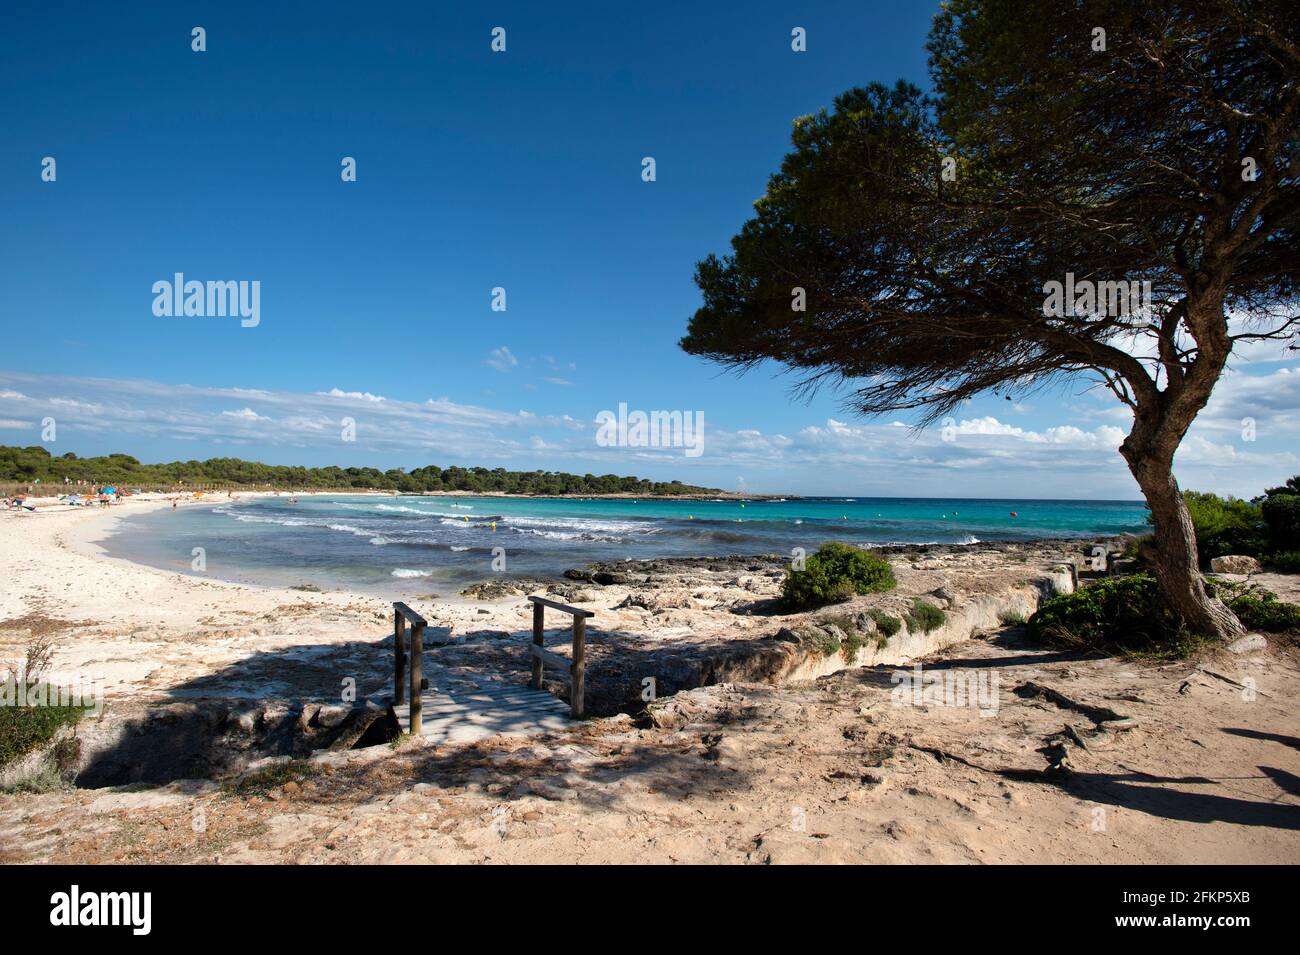 La hermosa playa de arena blanca en Son saura On la costa sur de menorca Foto de stock